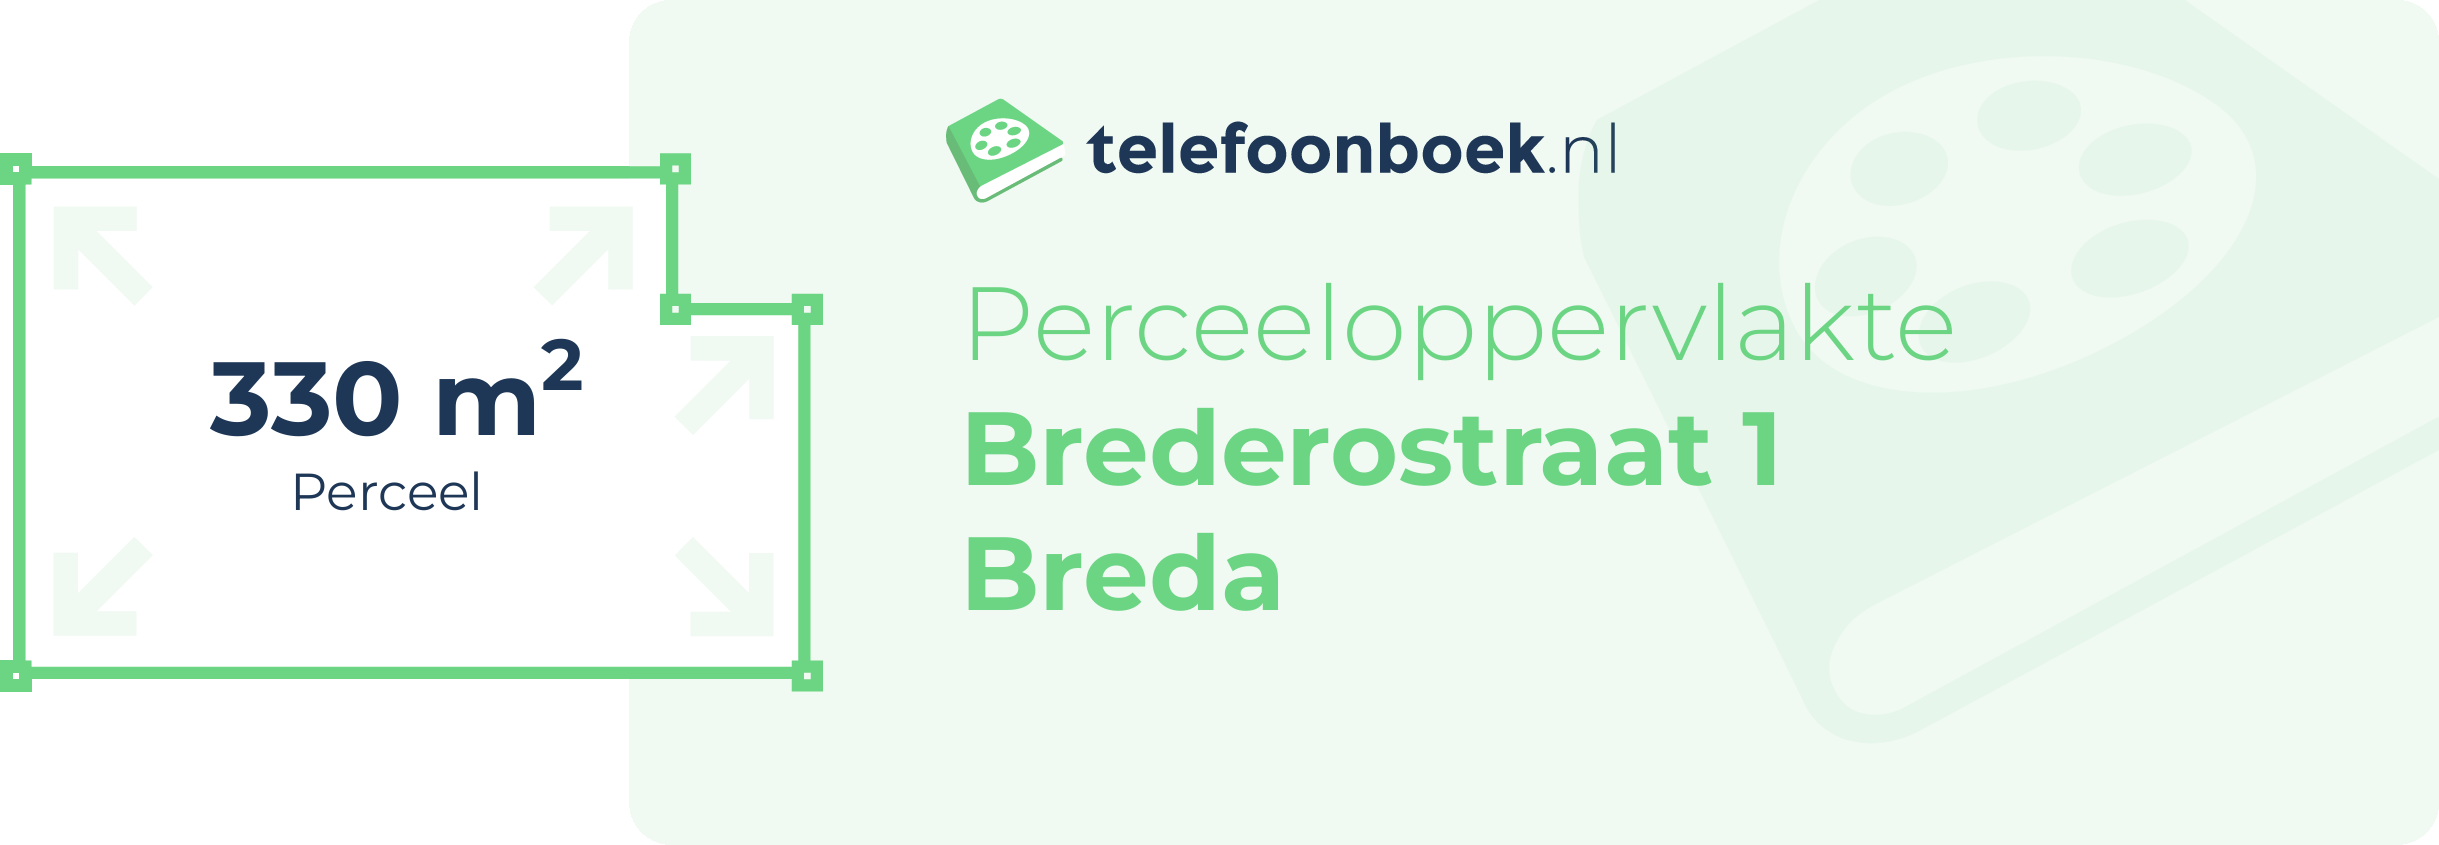 Perceeloppervlakte Brederostraat 1 Breda